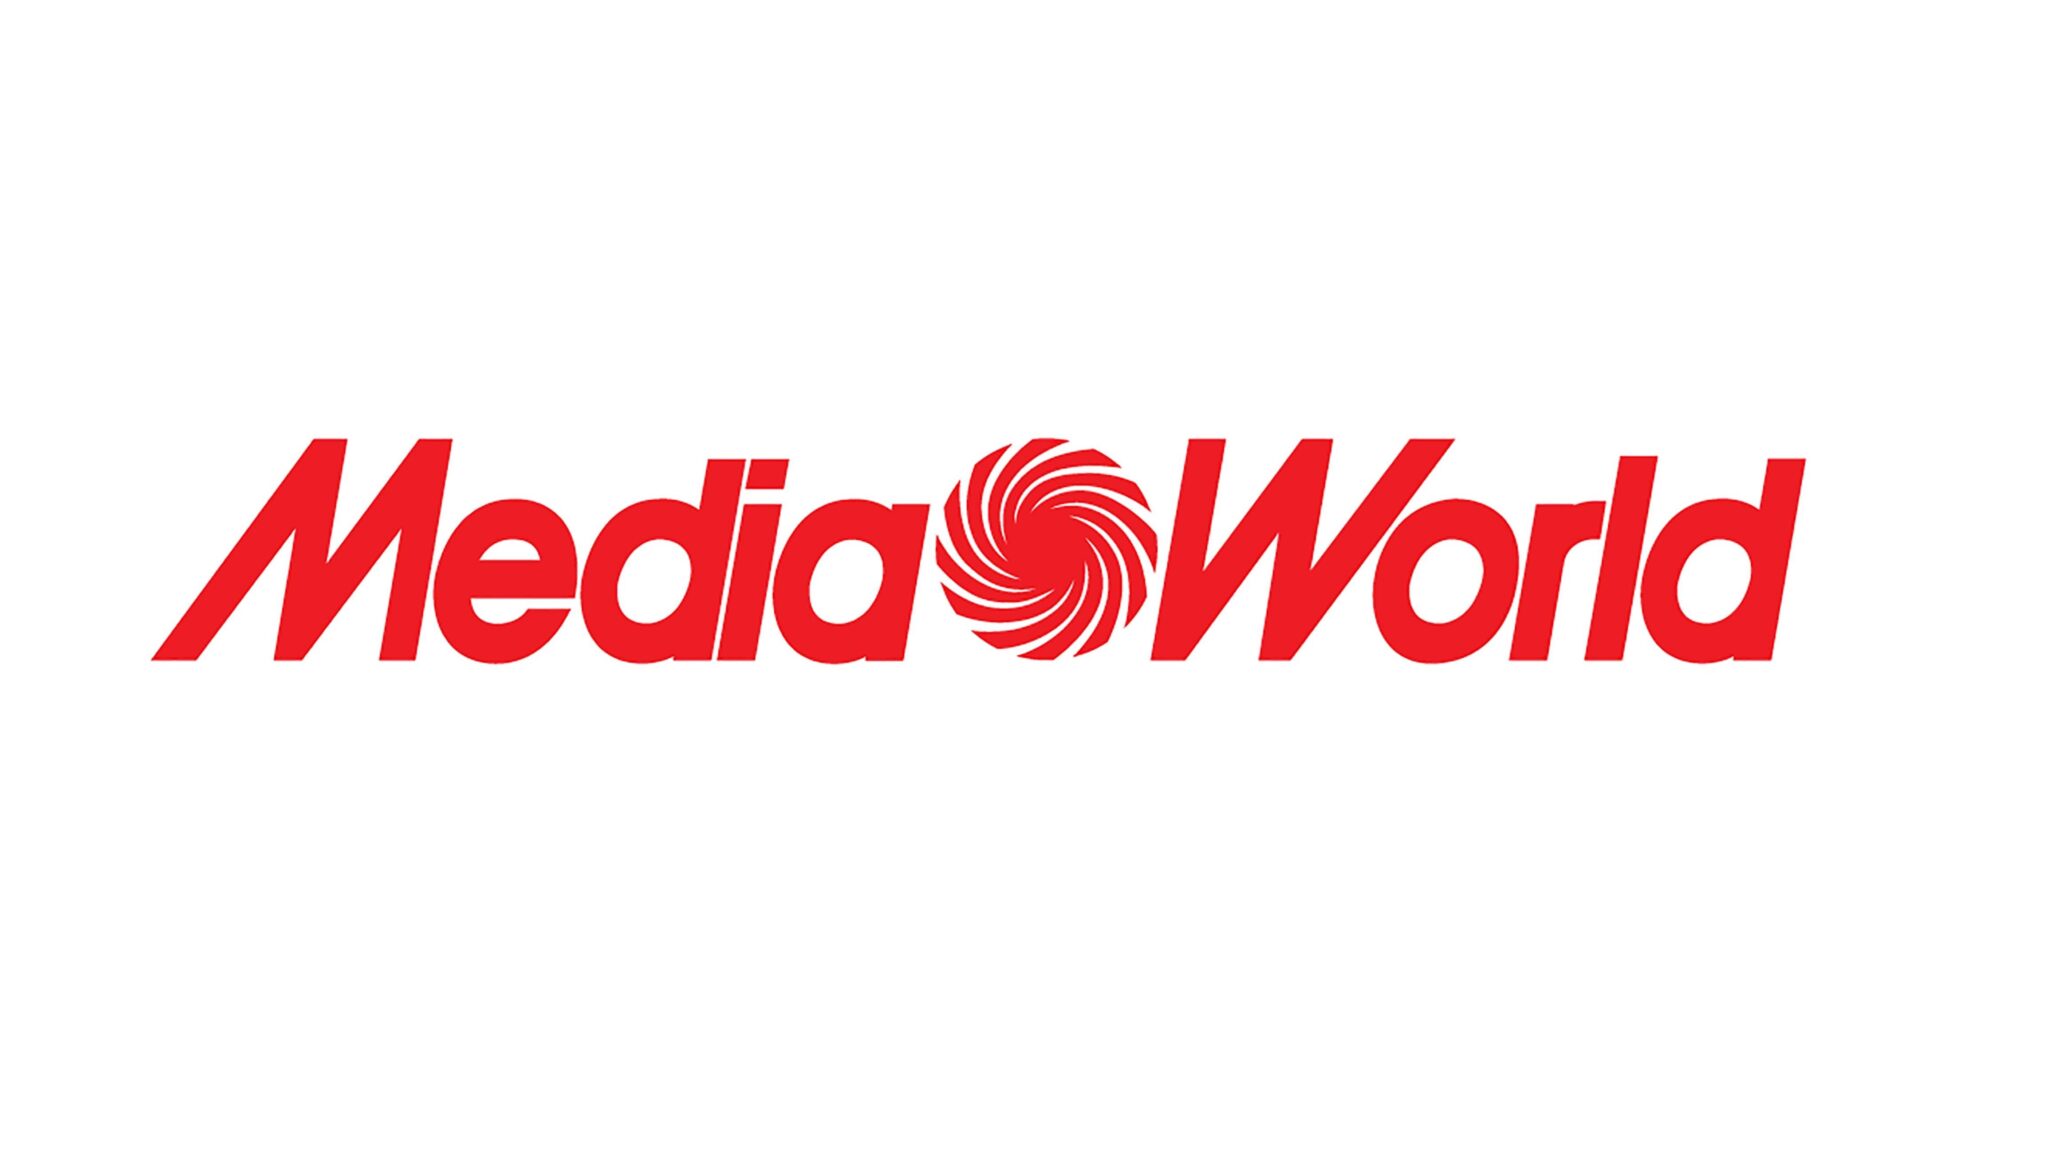 MediaWorld "Tv&PC Mania"